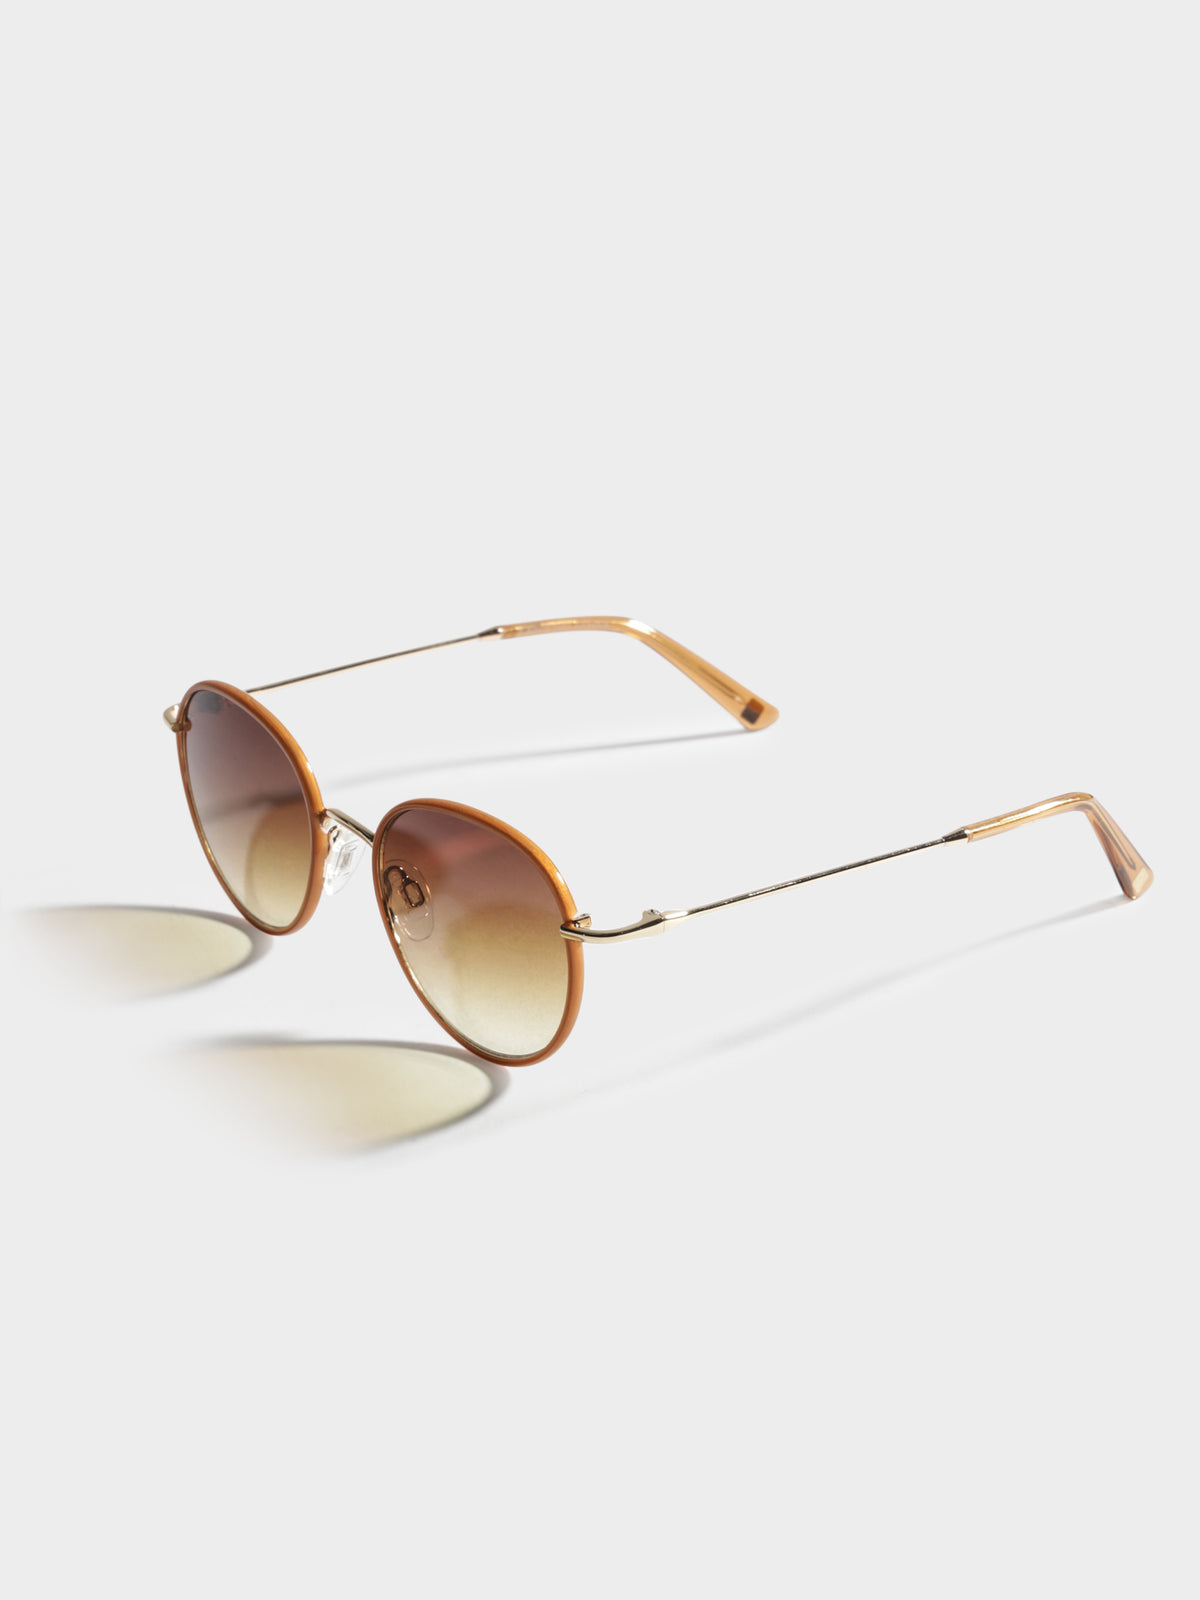 CL7816 Miami Sunglasses in Brown &amp; Gold